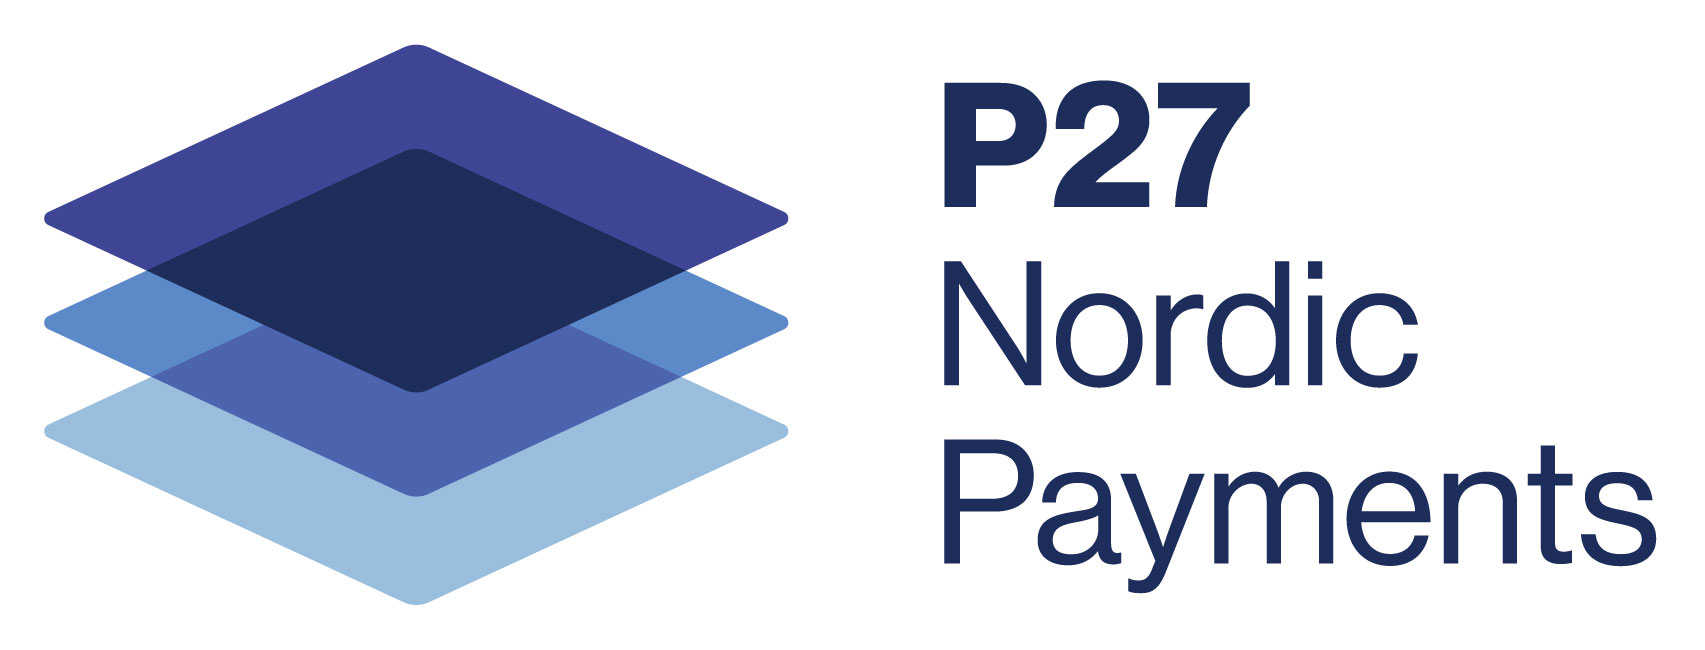 P27 Nordic Payments Platform